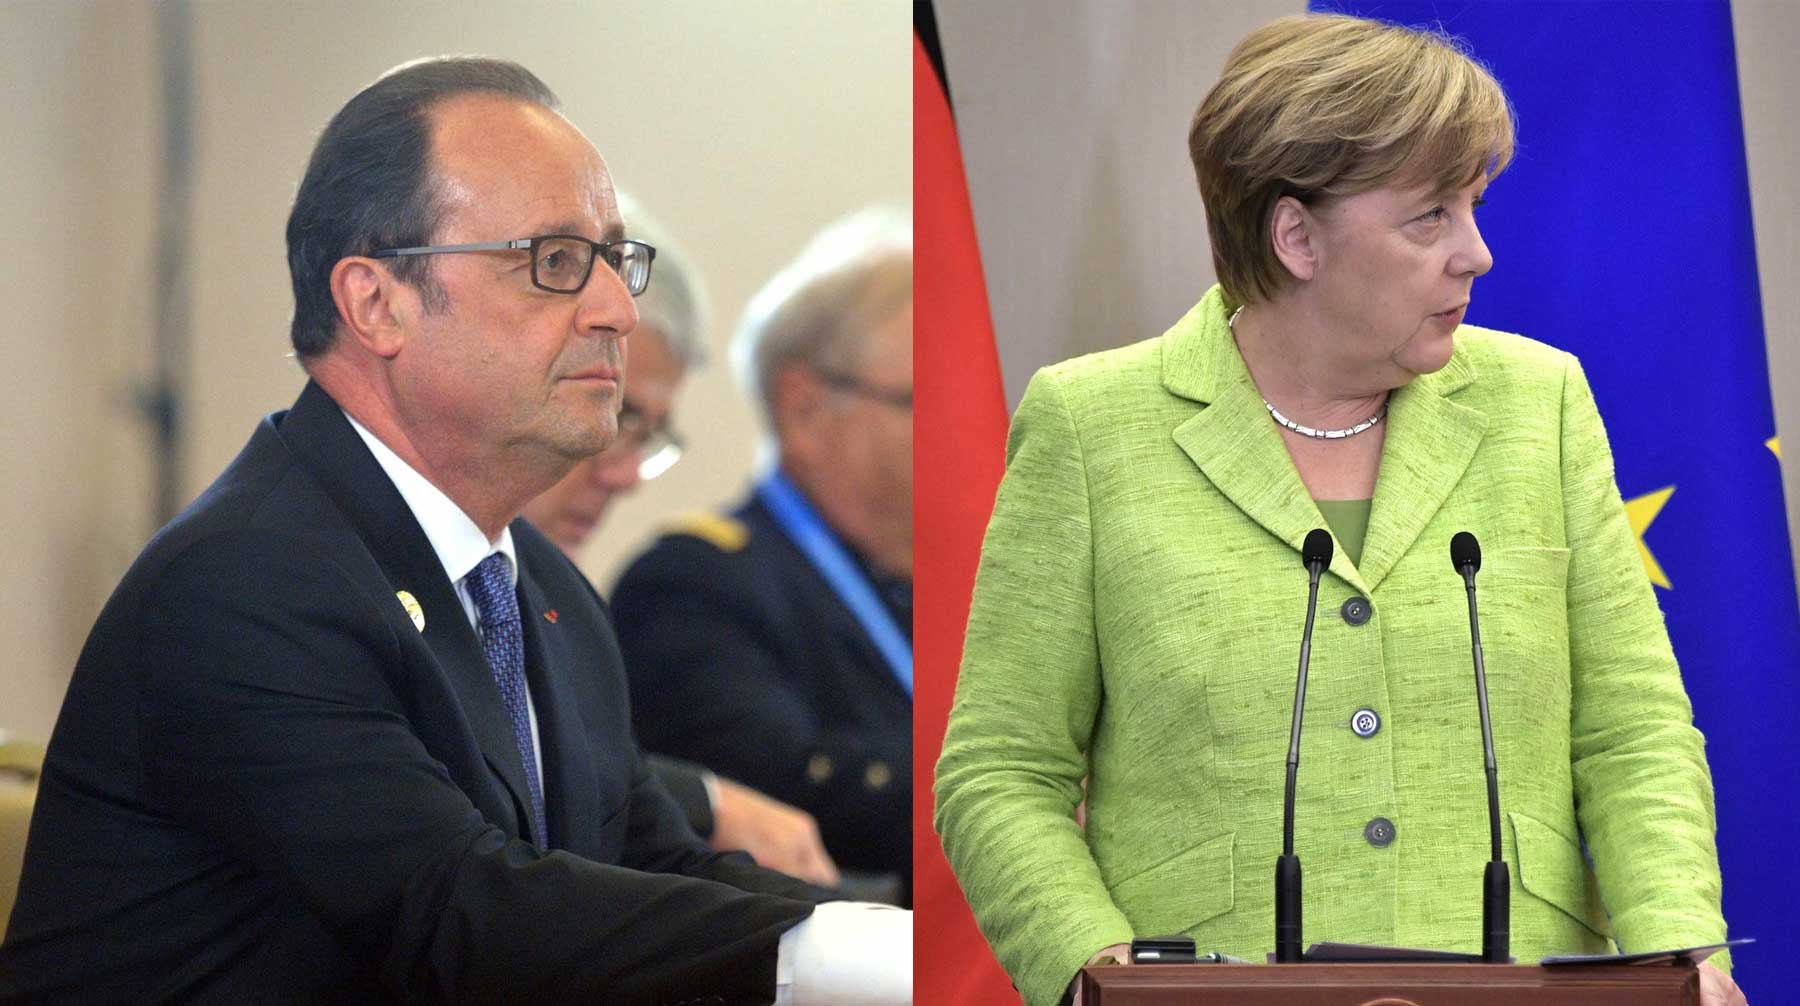 Глава МИД РФ заявил, что руководители Франции и Германии настоятельно попросили не выступать с заявлением о непризнании выборов Франуса Олланд и Ангела Меркель